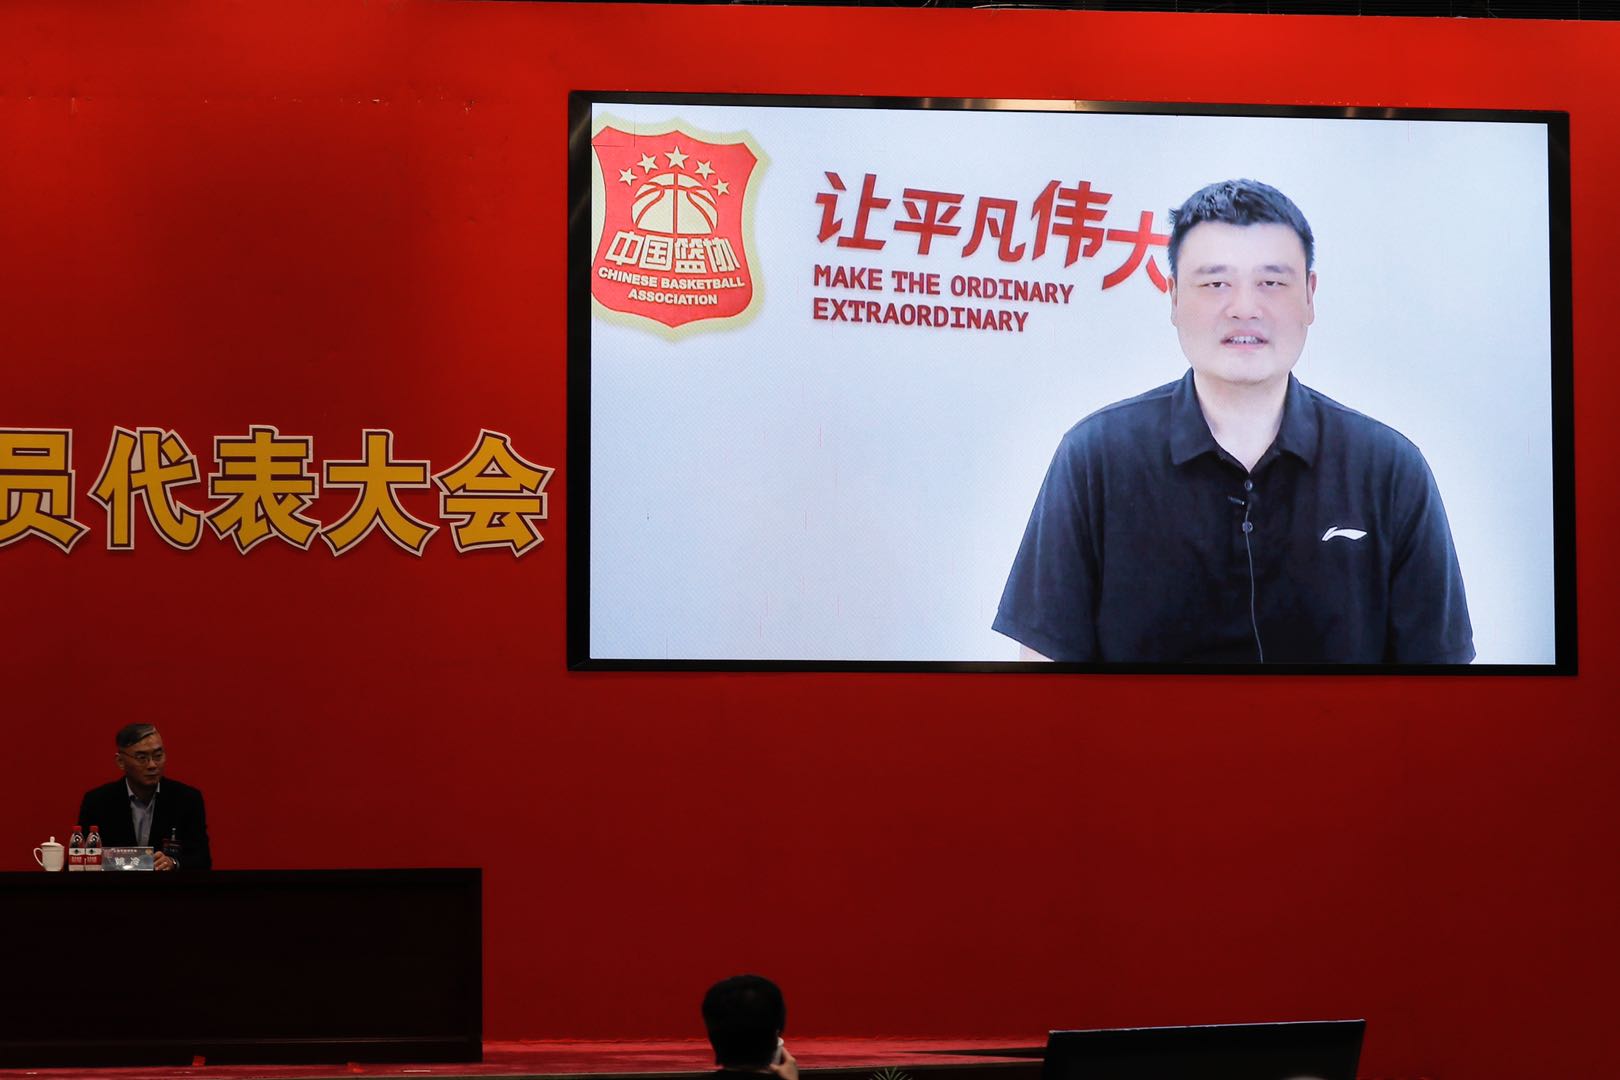 中国篮球协会主席姚明通过视频向大会的胜利召开表示祝贺